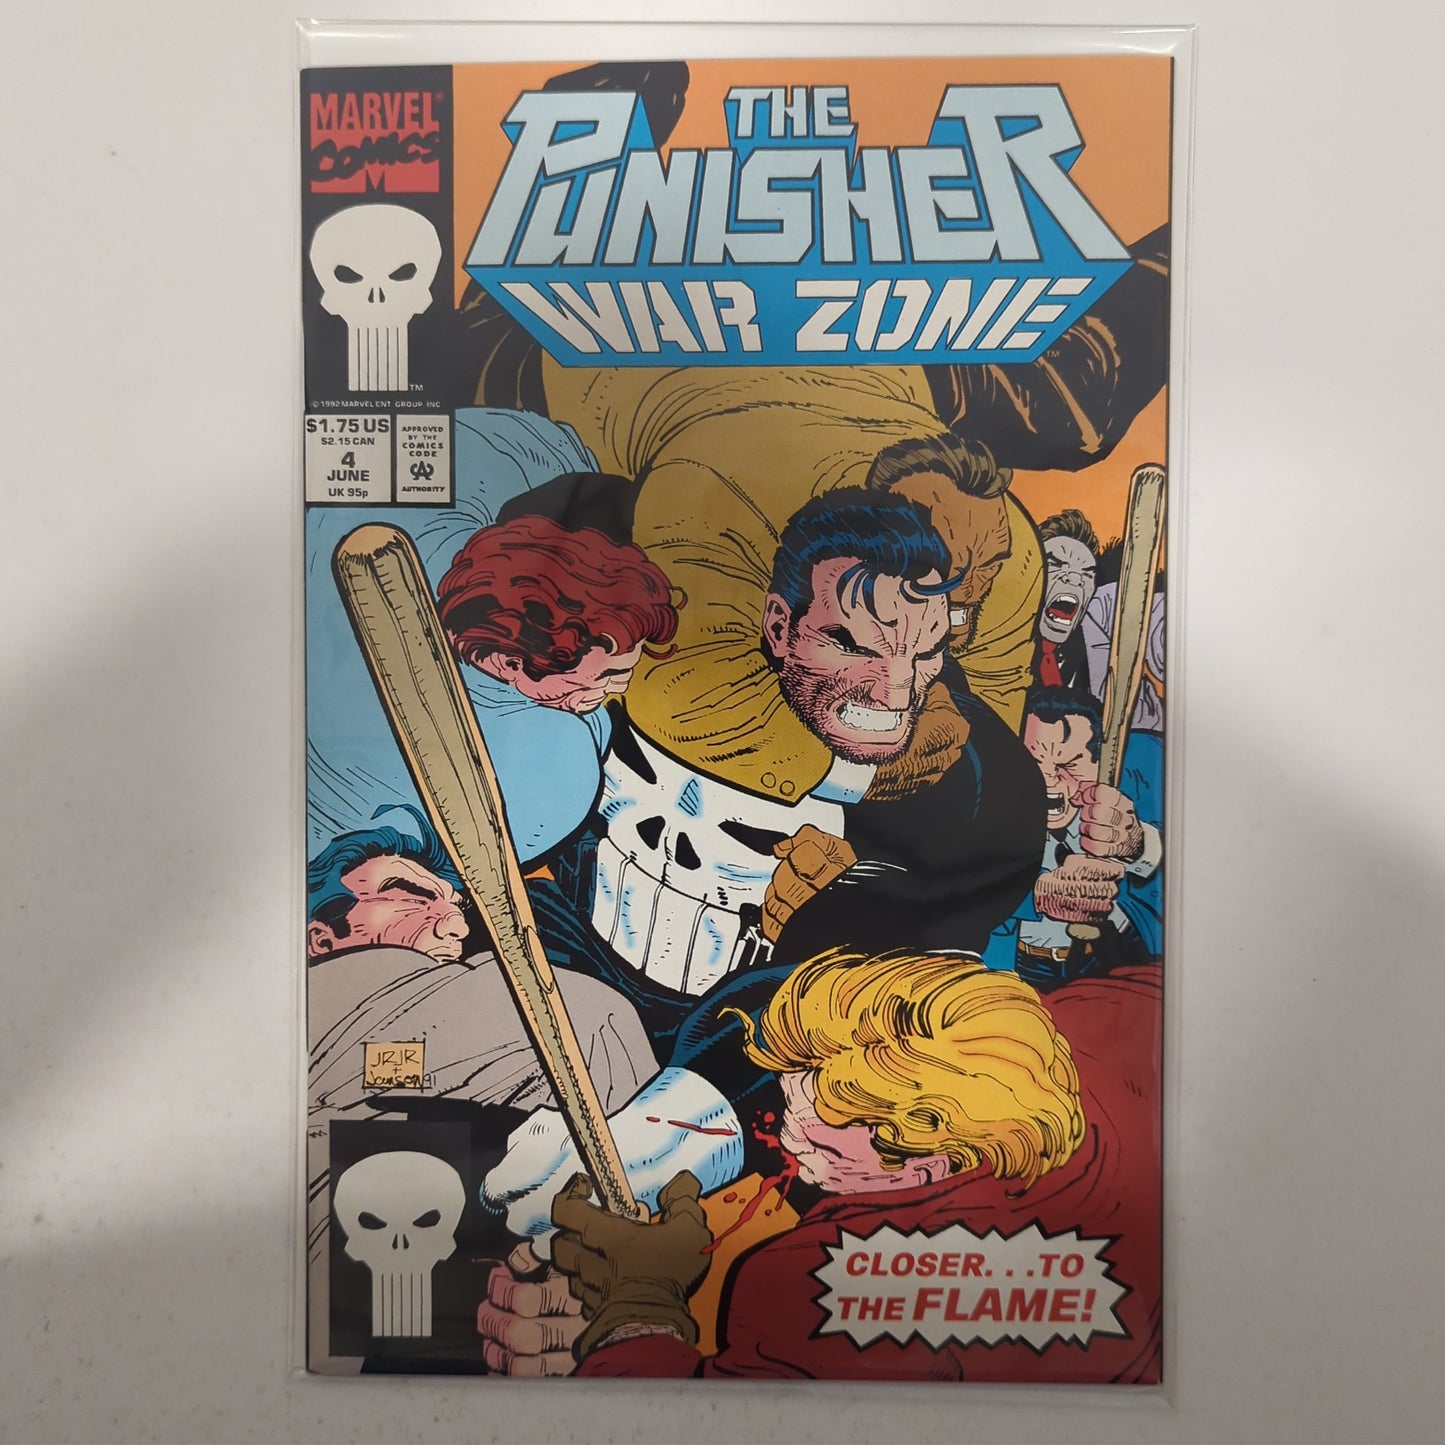 The Punisher War Zone #5